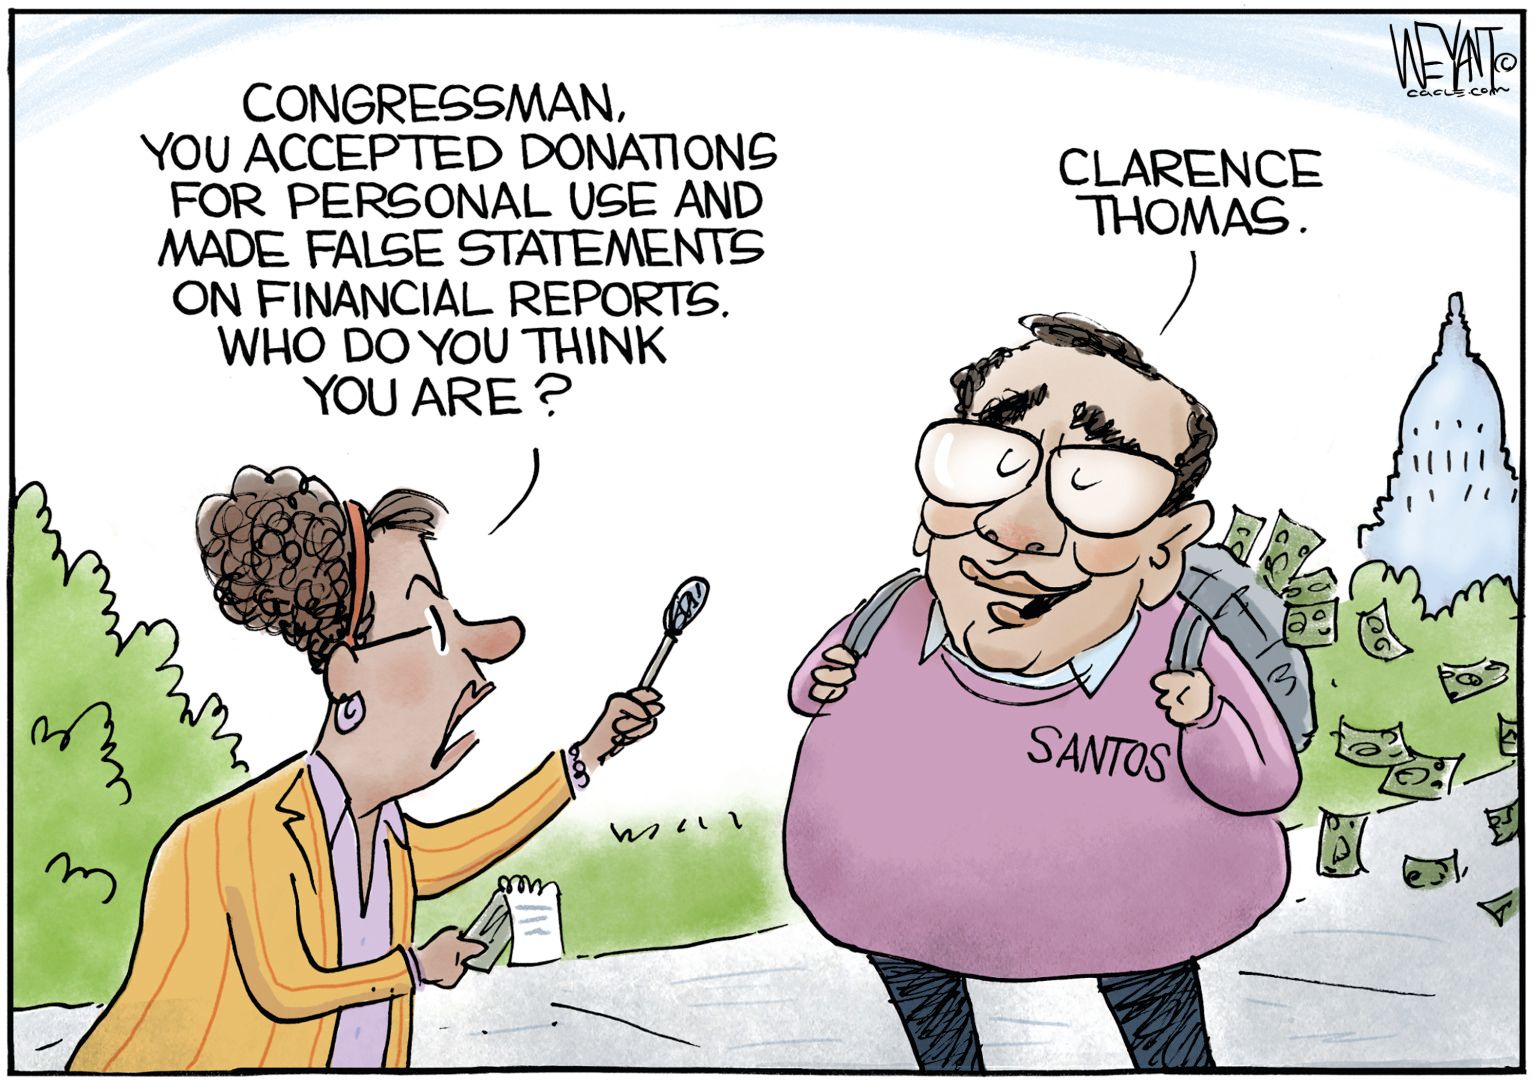 newsjustin.press - editorial political cartoon - Santos and Clarence